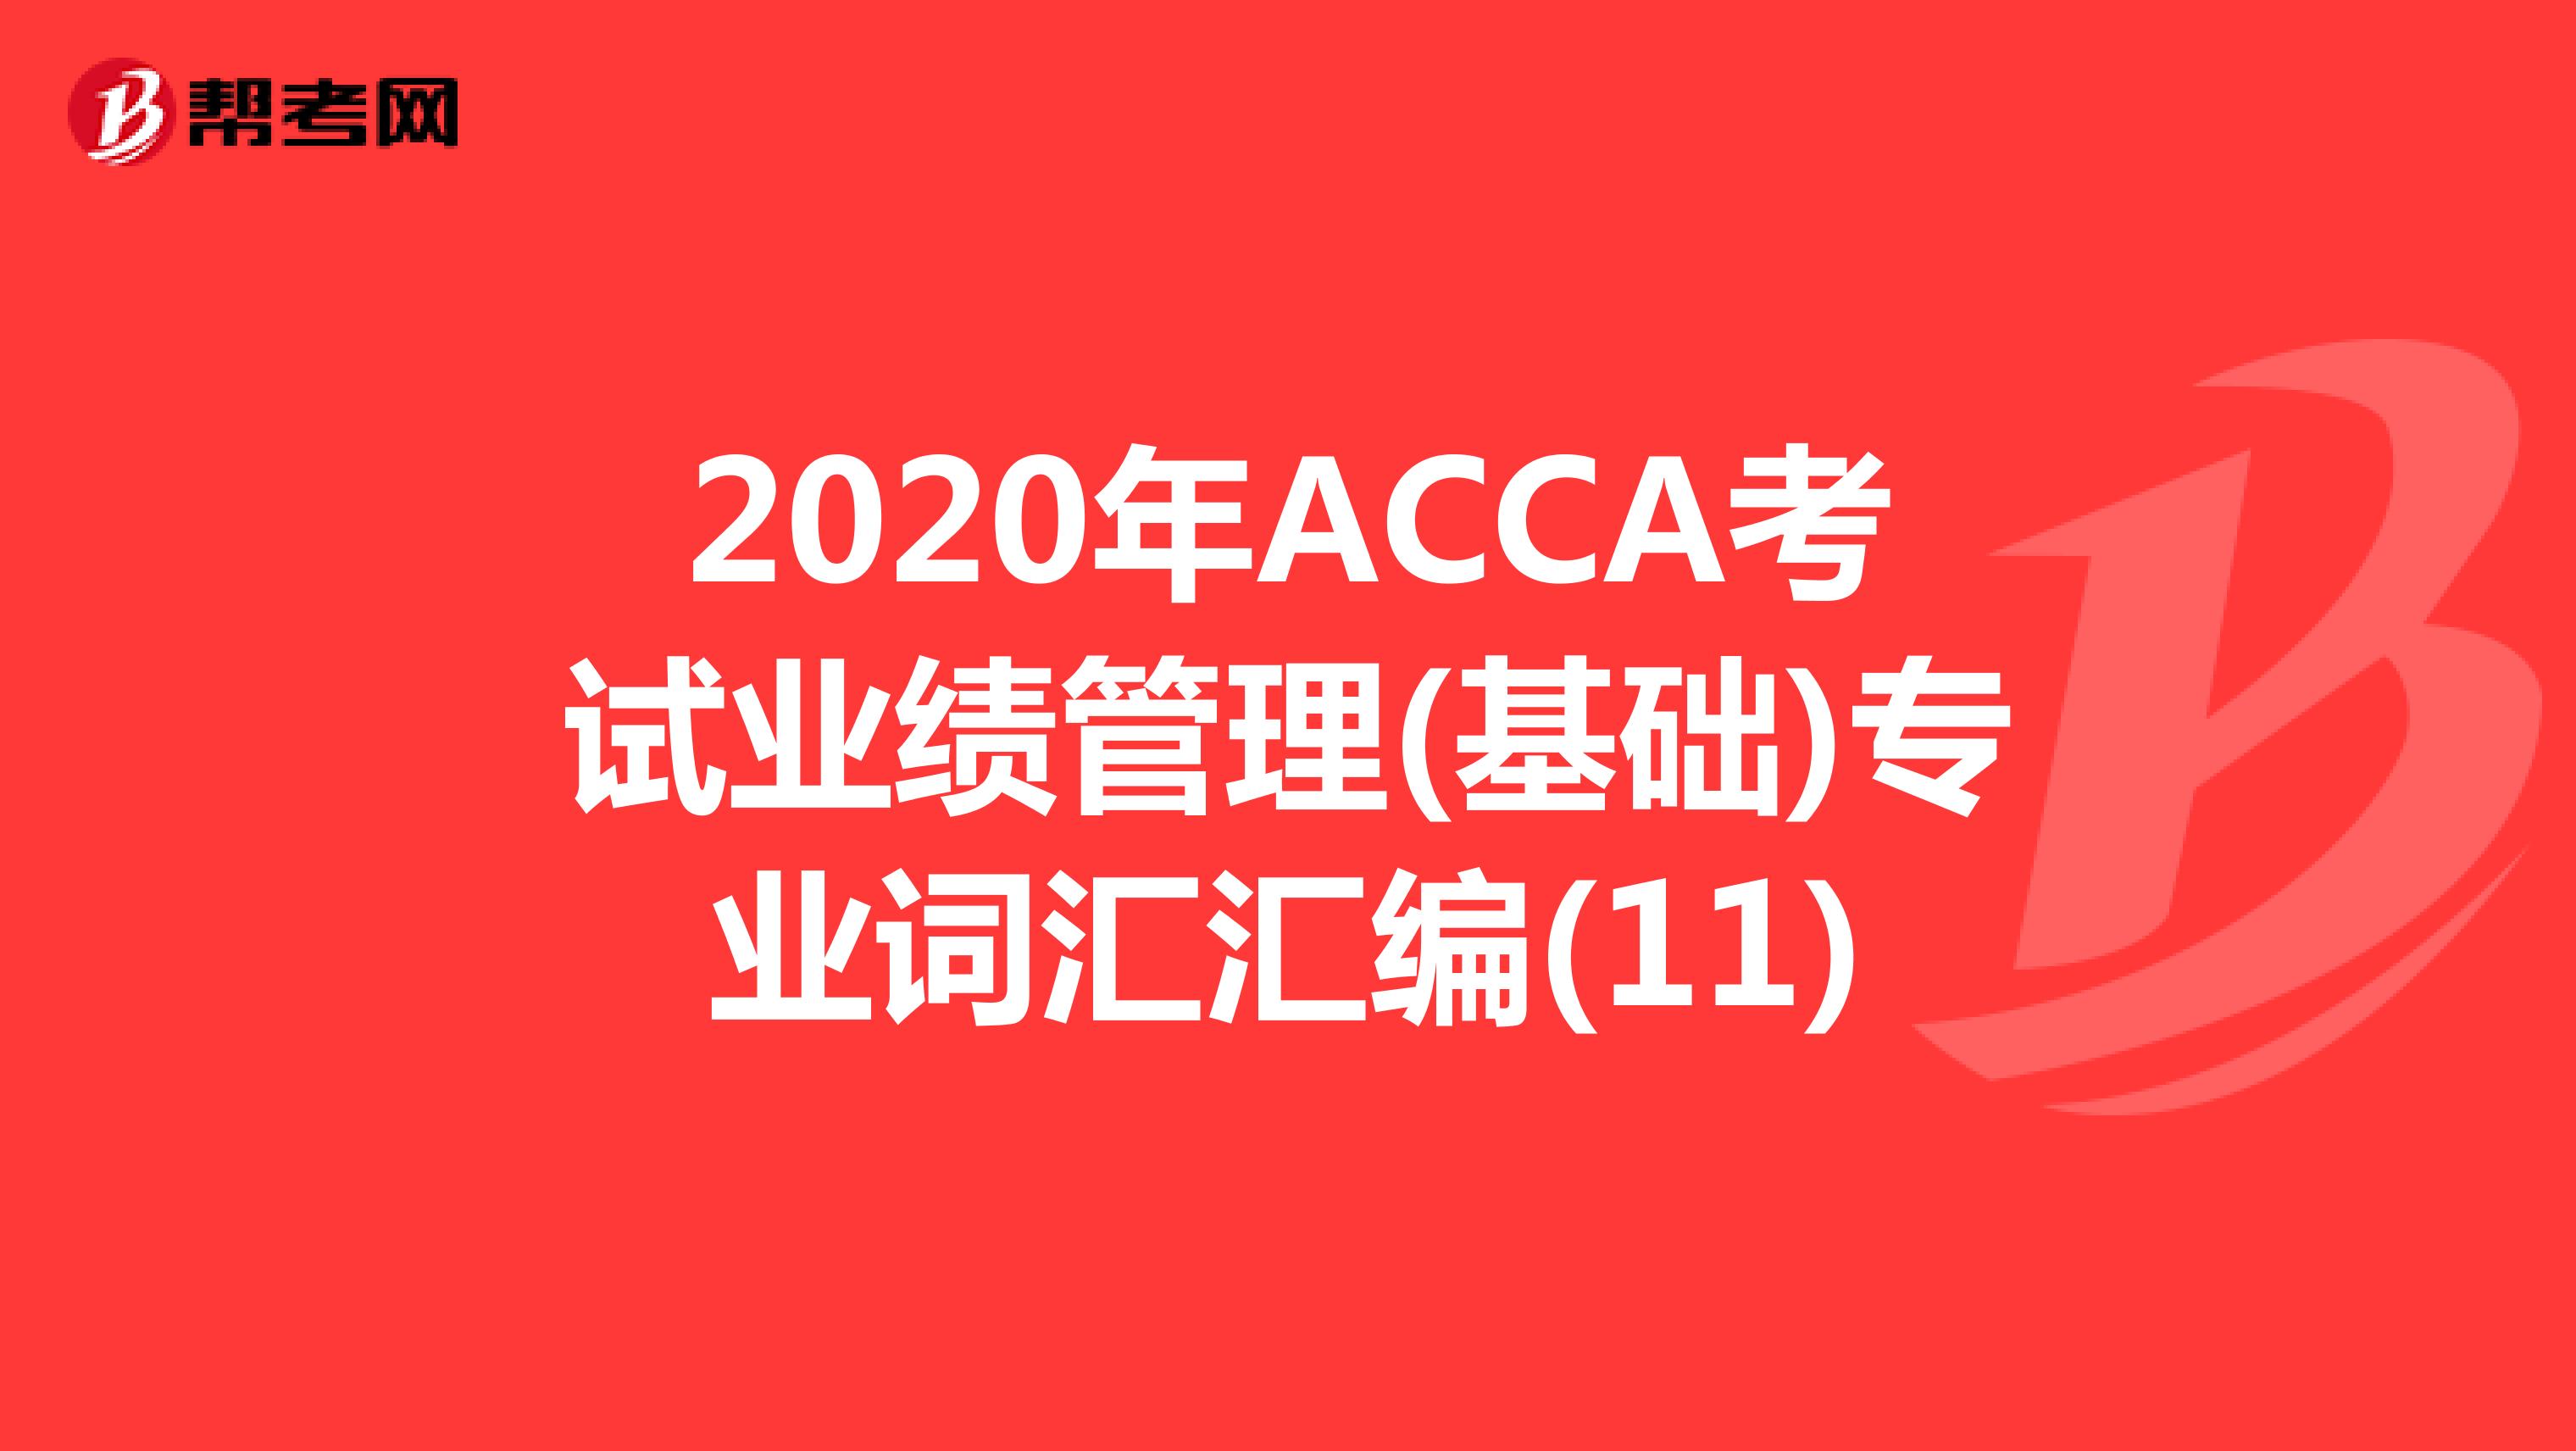 2020年ACCA考试业绩管理(基础)专业词汇汇编(11)